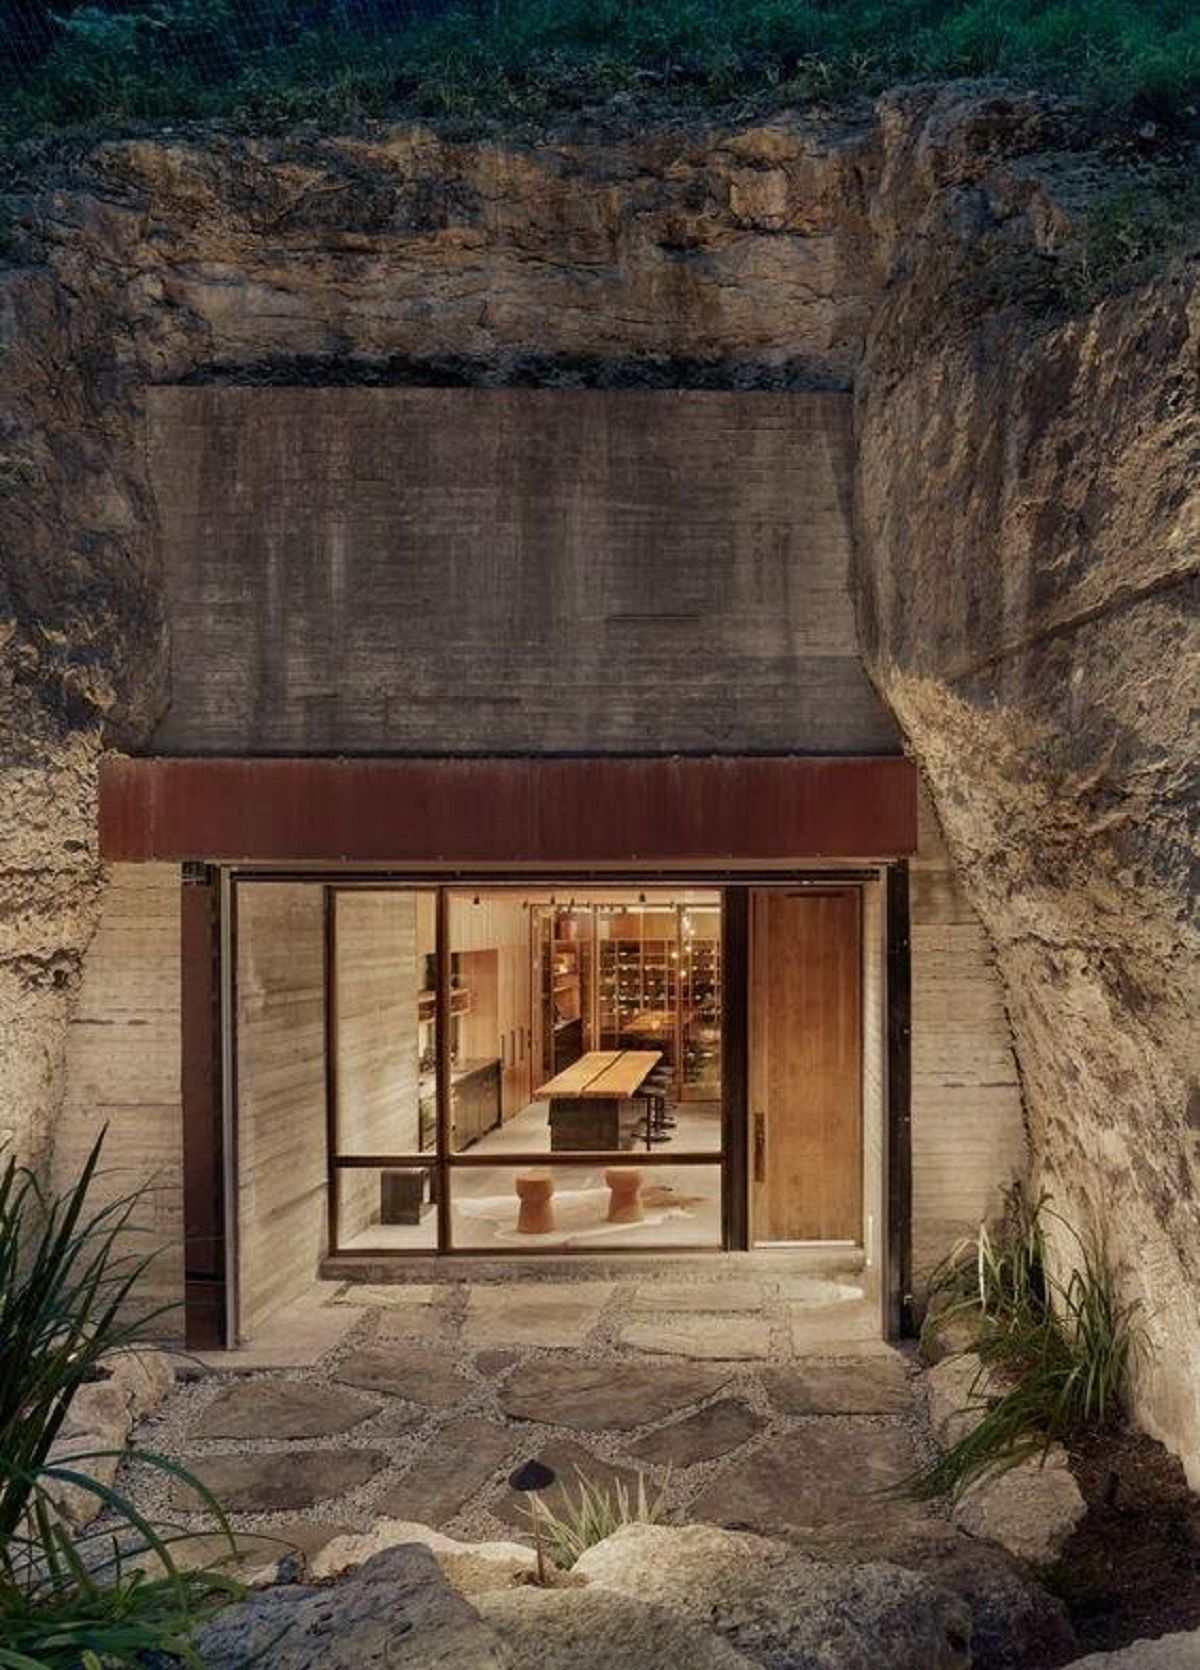 Kỳ thú 6 công trình nhà ở hang động độc đáo lấy cảm hứng từ lịch sử cổ đại